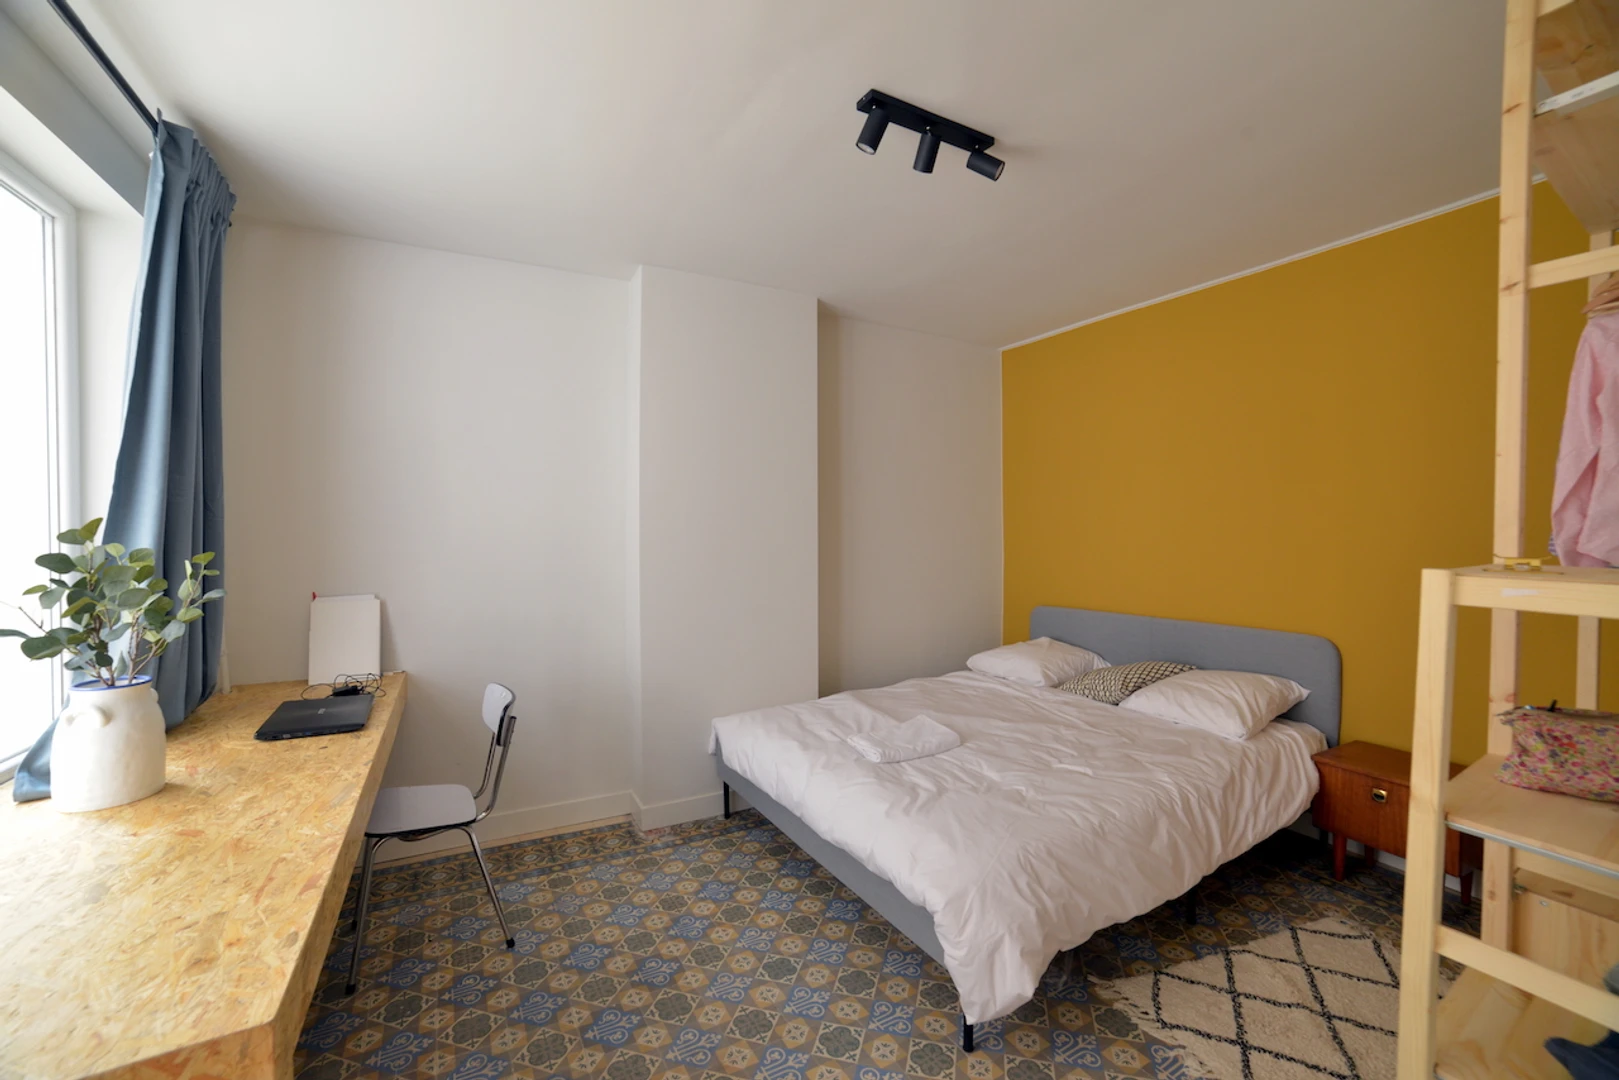 Alquiler de habitación en piso compartido en Bruxelles/bruselas